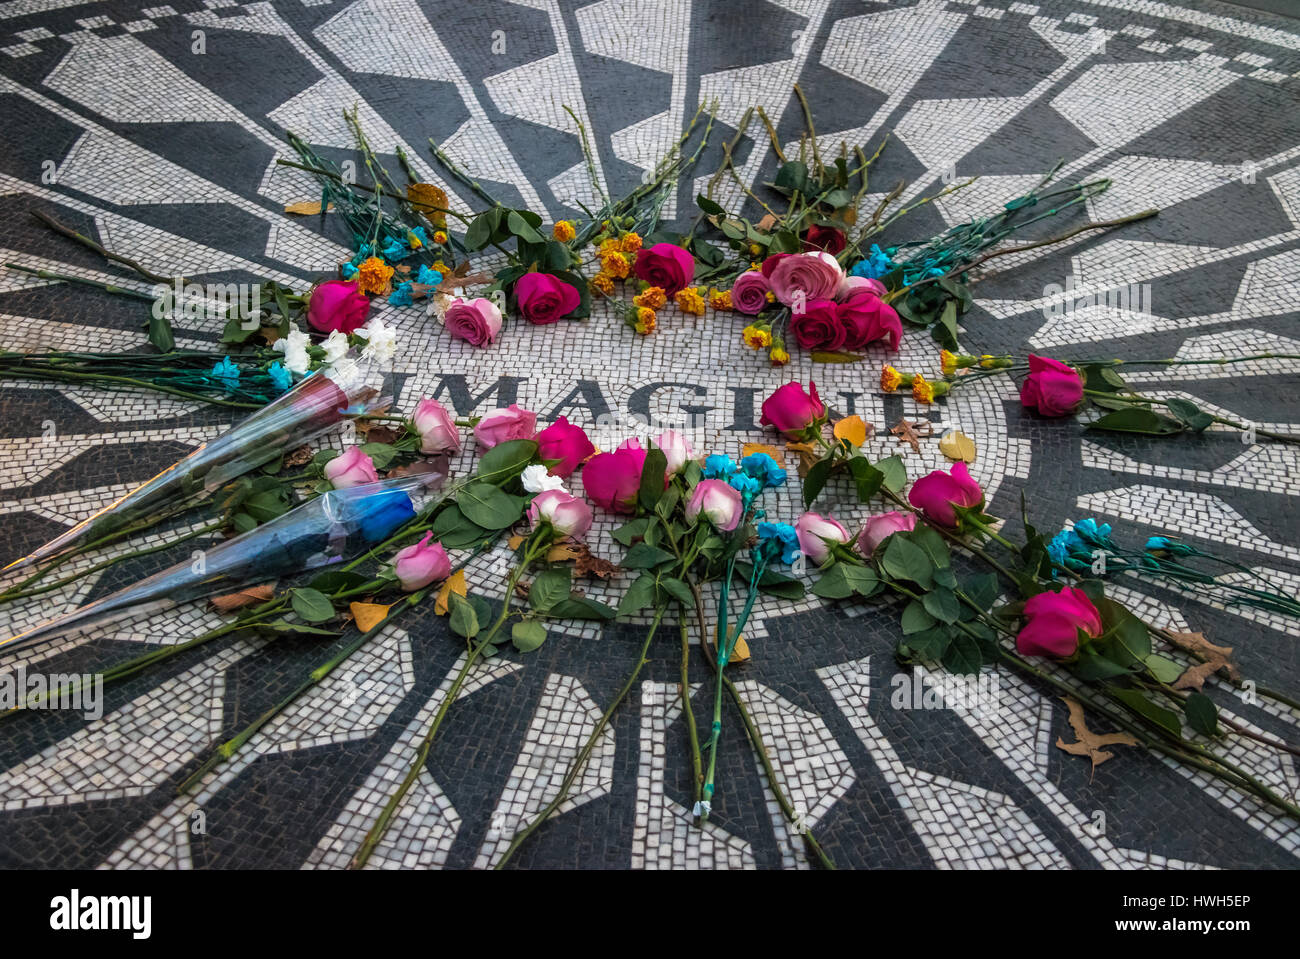 Imagine el mosaico con flores en el aniversario de la muerte de John Lennon en Strawberry Fields en Central Park, Manhattan, Nueva York, EE.UU. Foto de stock